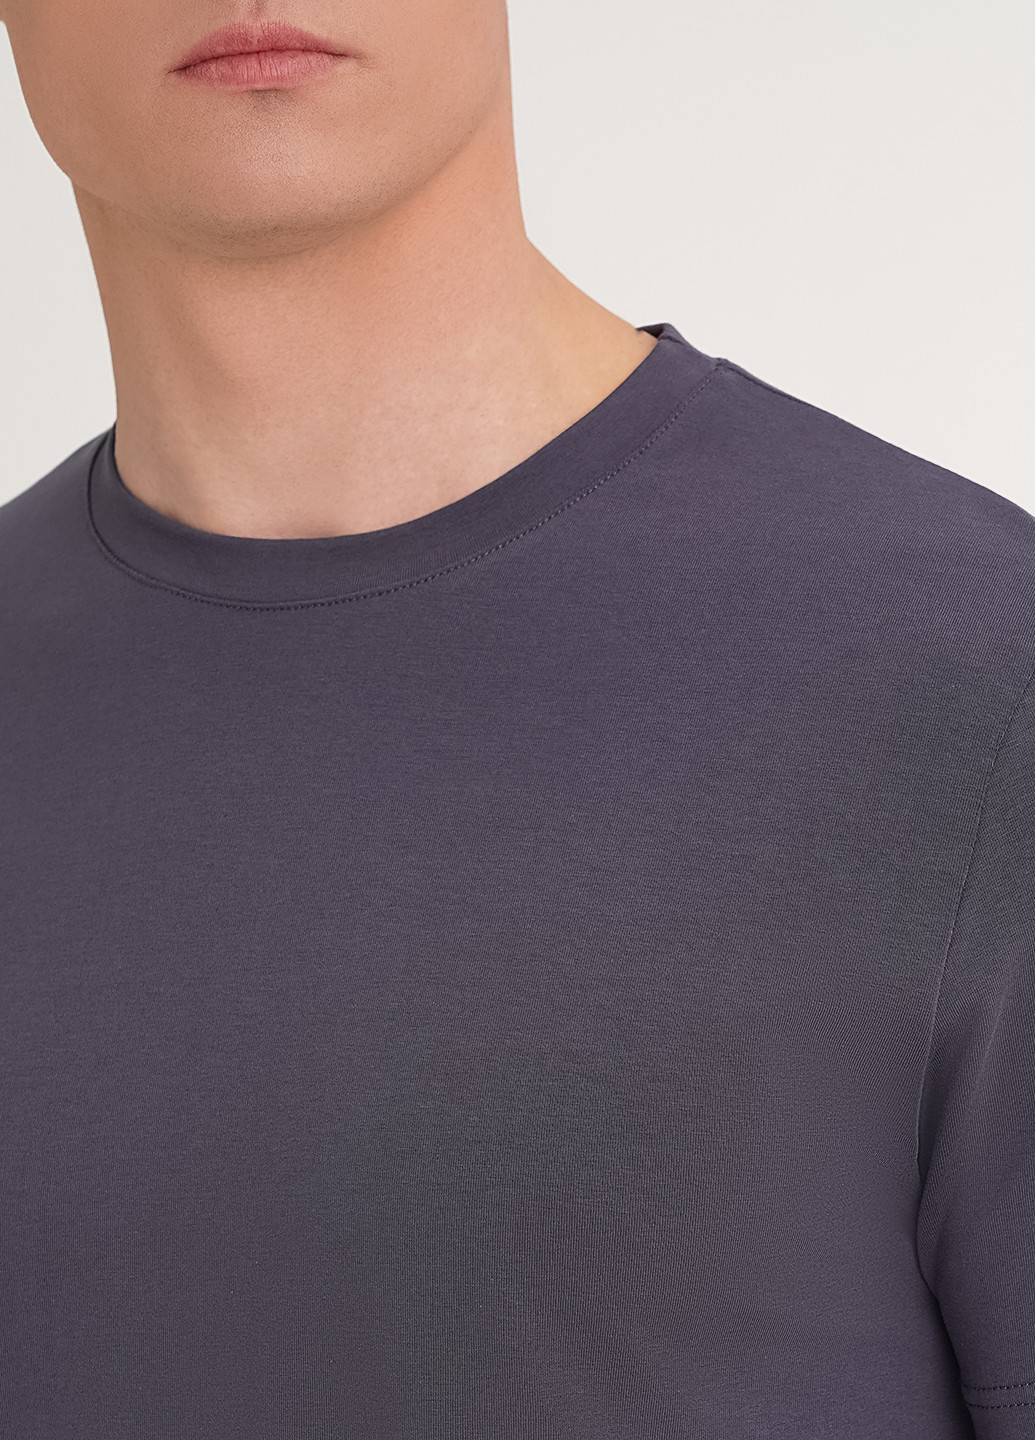 Сіра чоловіча футболка KASTA design